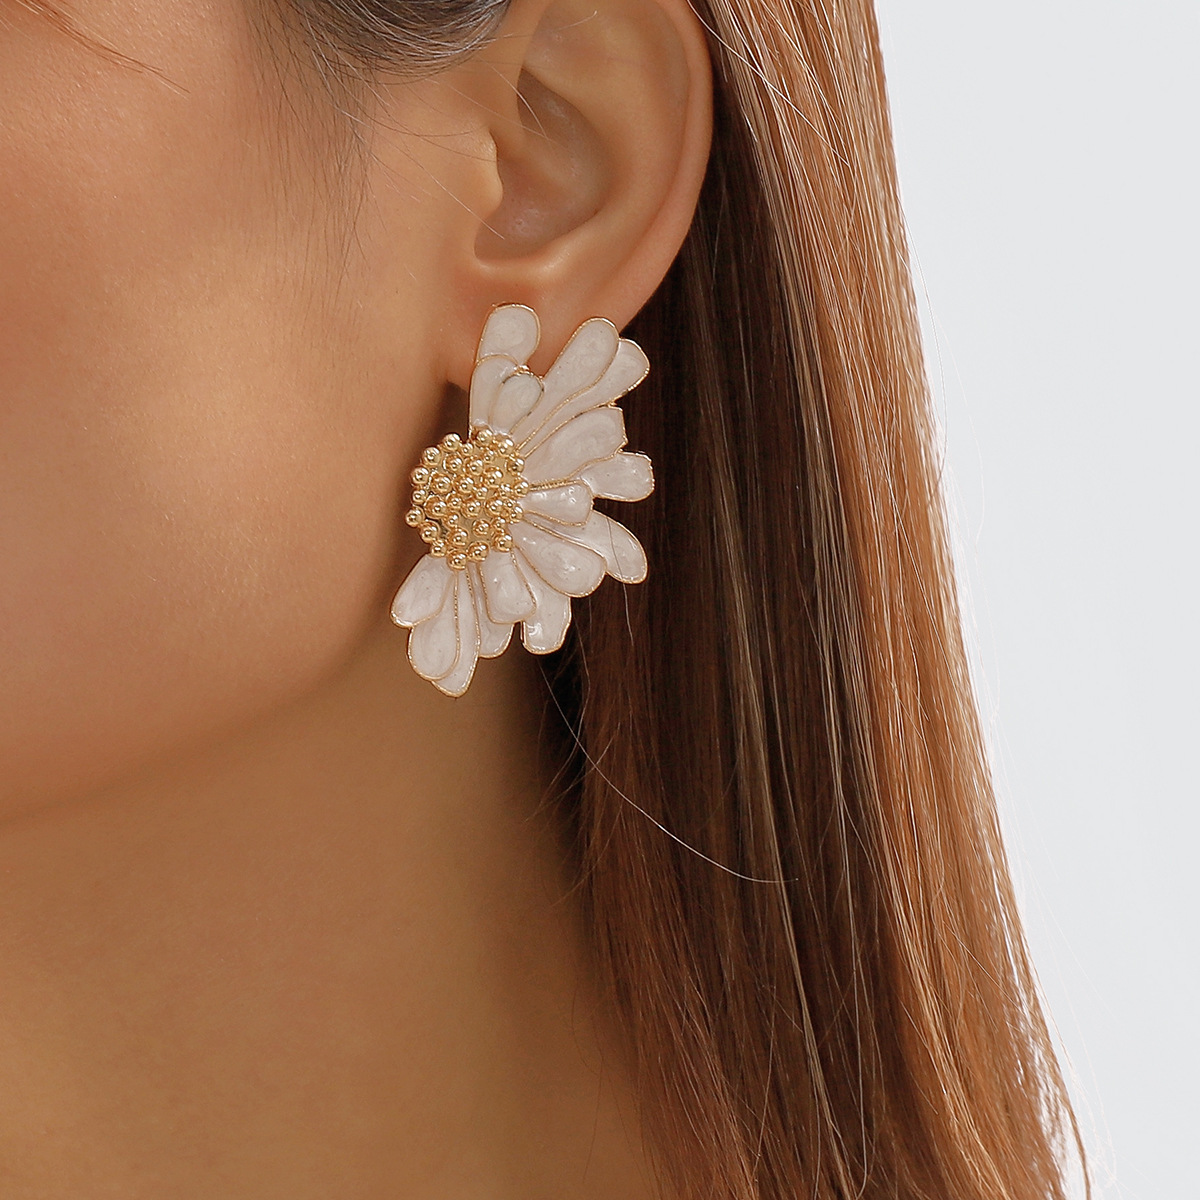 Vintage Alloy Floral Stud Earrings E8418 - Elegant Retro Chic Women's Earwear